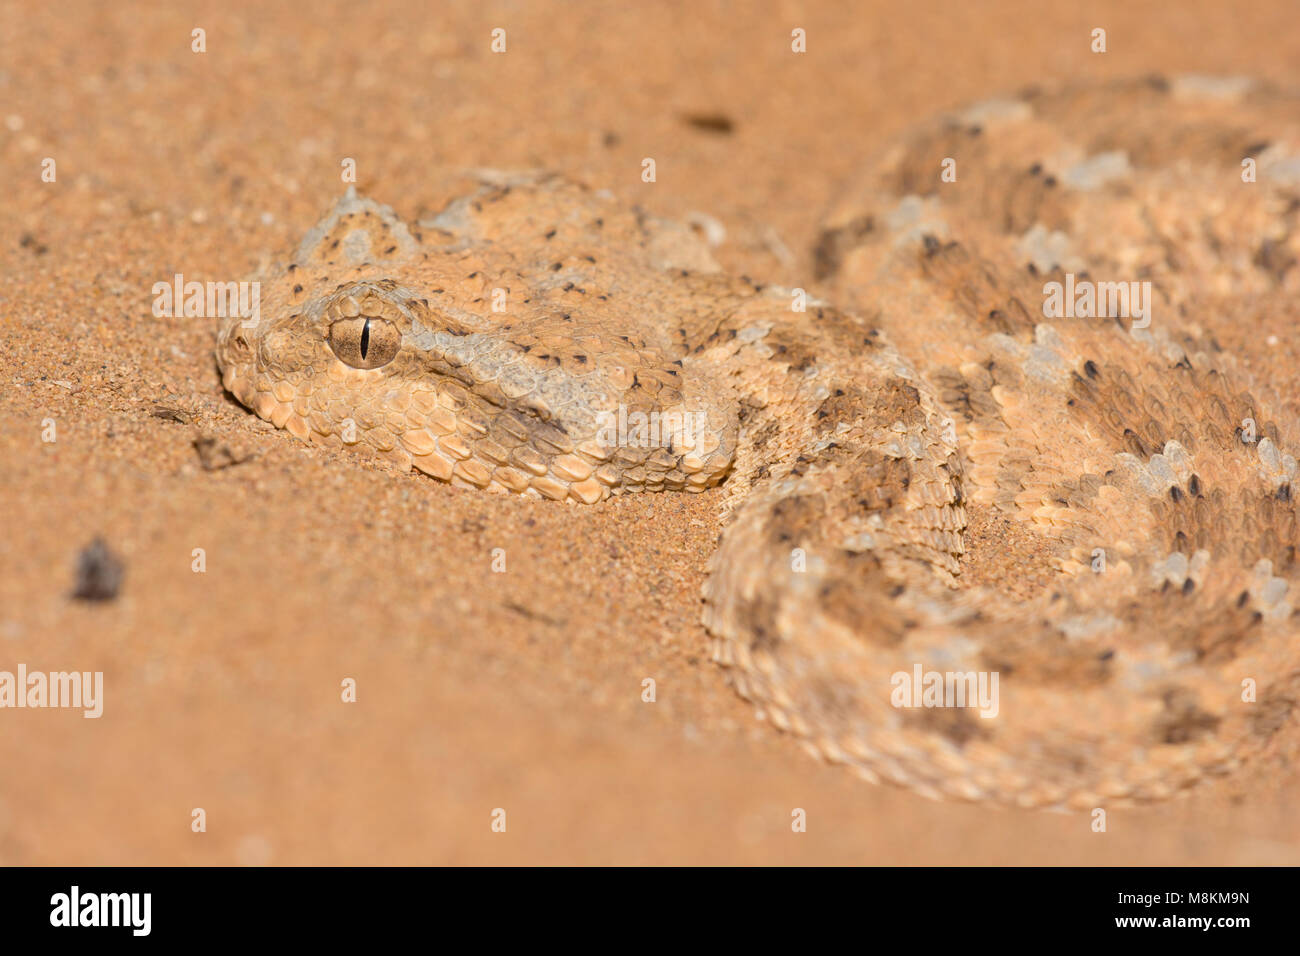 Bien entramado víbora cornuda del desierto (Cerastes cerastes) en el desierto de Marruecos cerca del norte de África. Foto de stock